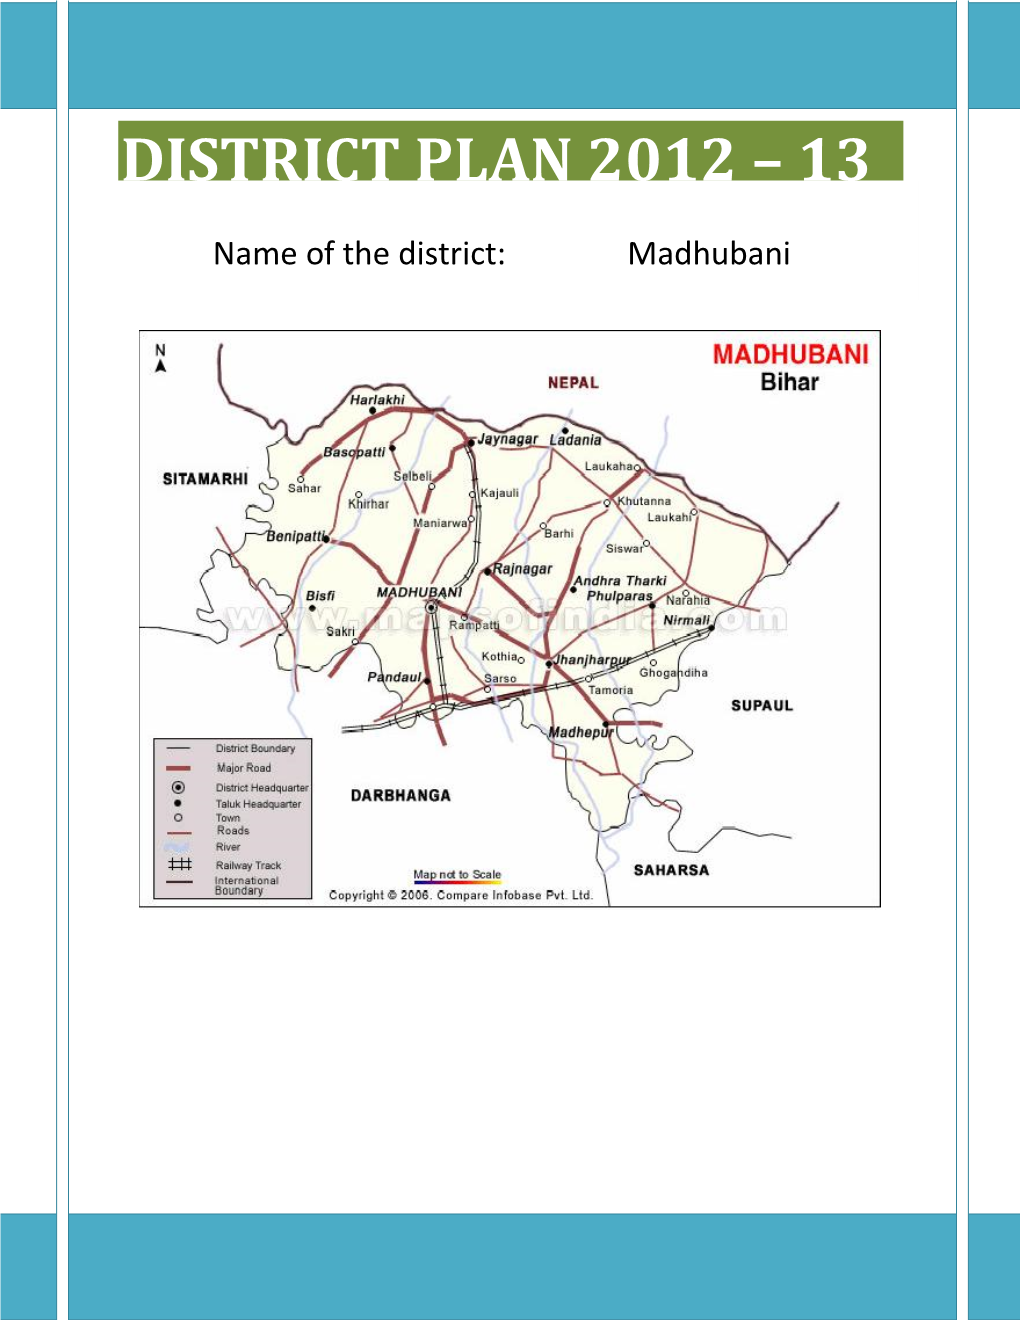 Name of the District: Madhubani